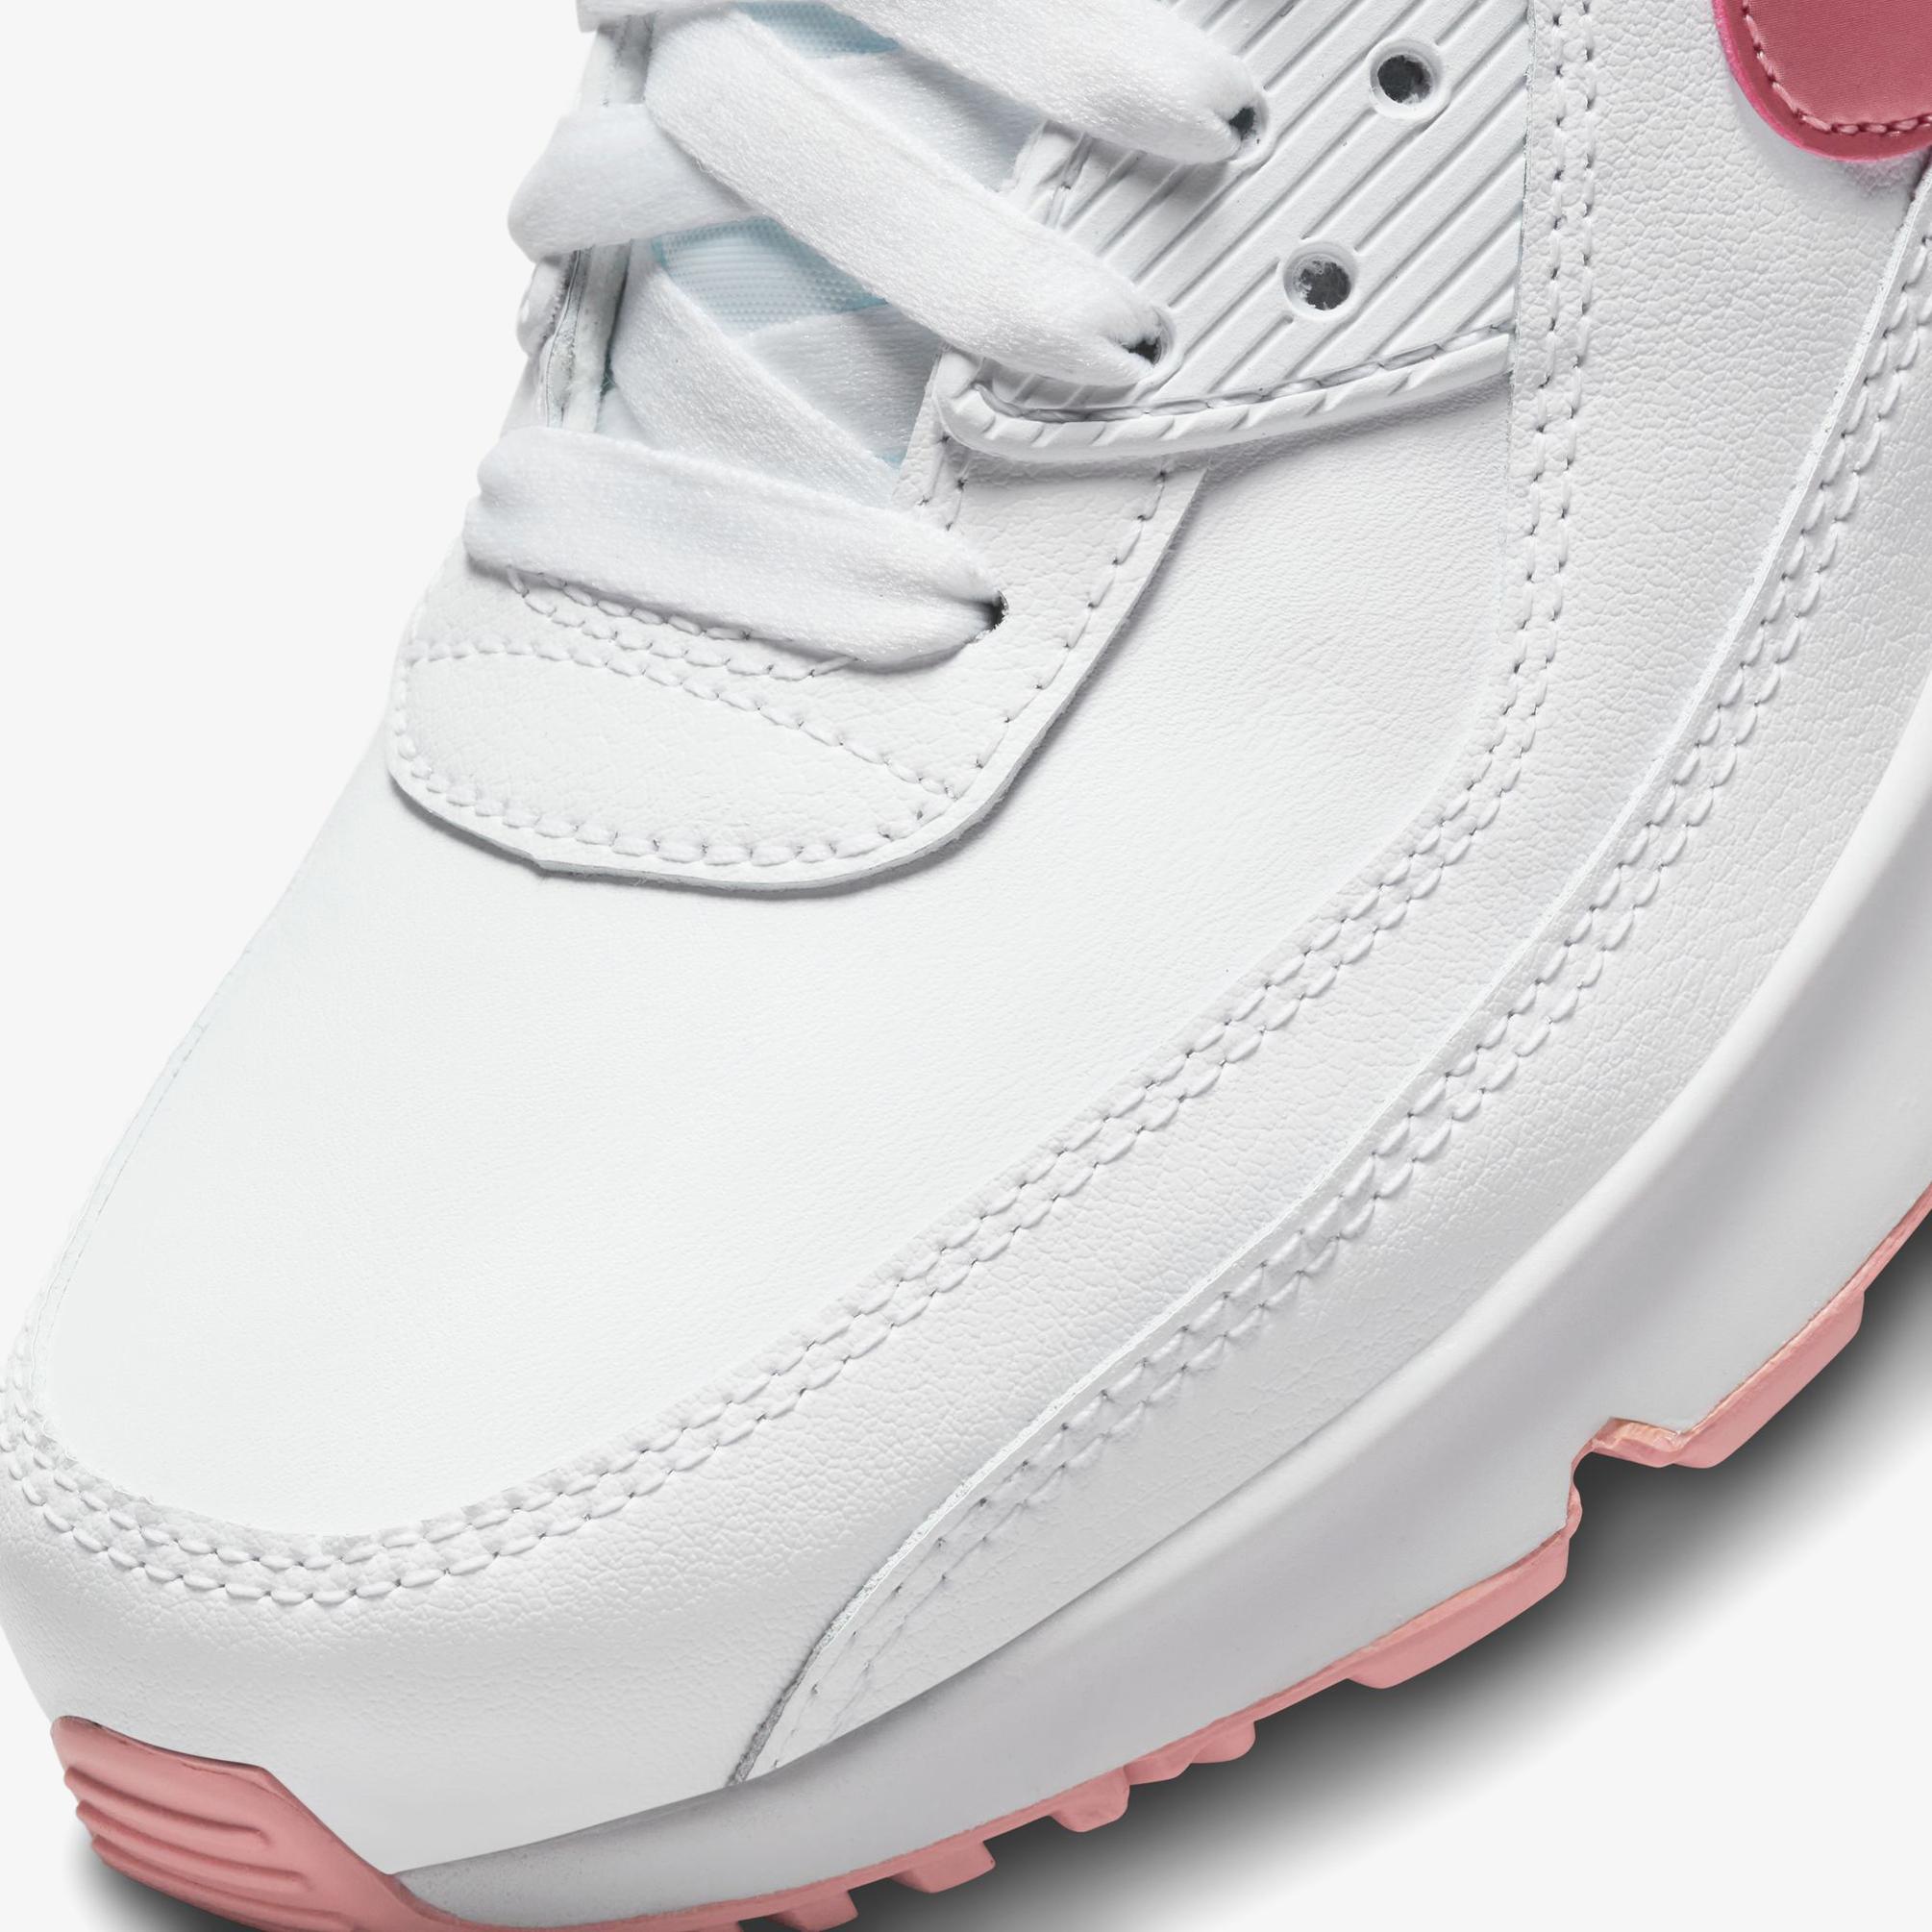  Nike Air Max 90 Leather Kadın Beyaz Spor Ayakkabı